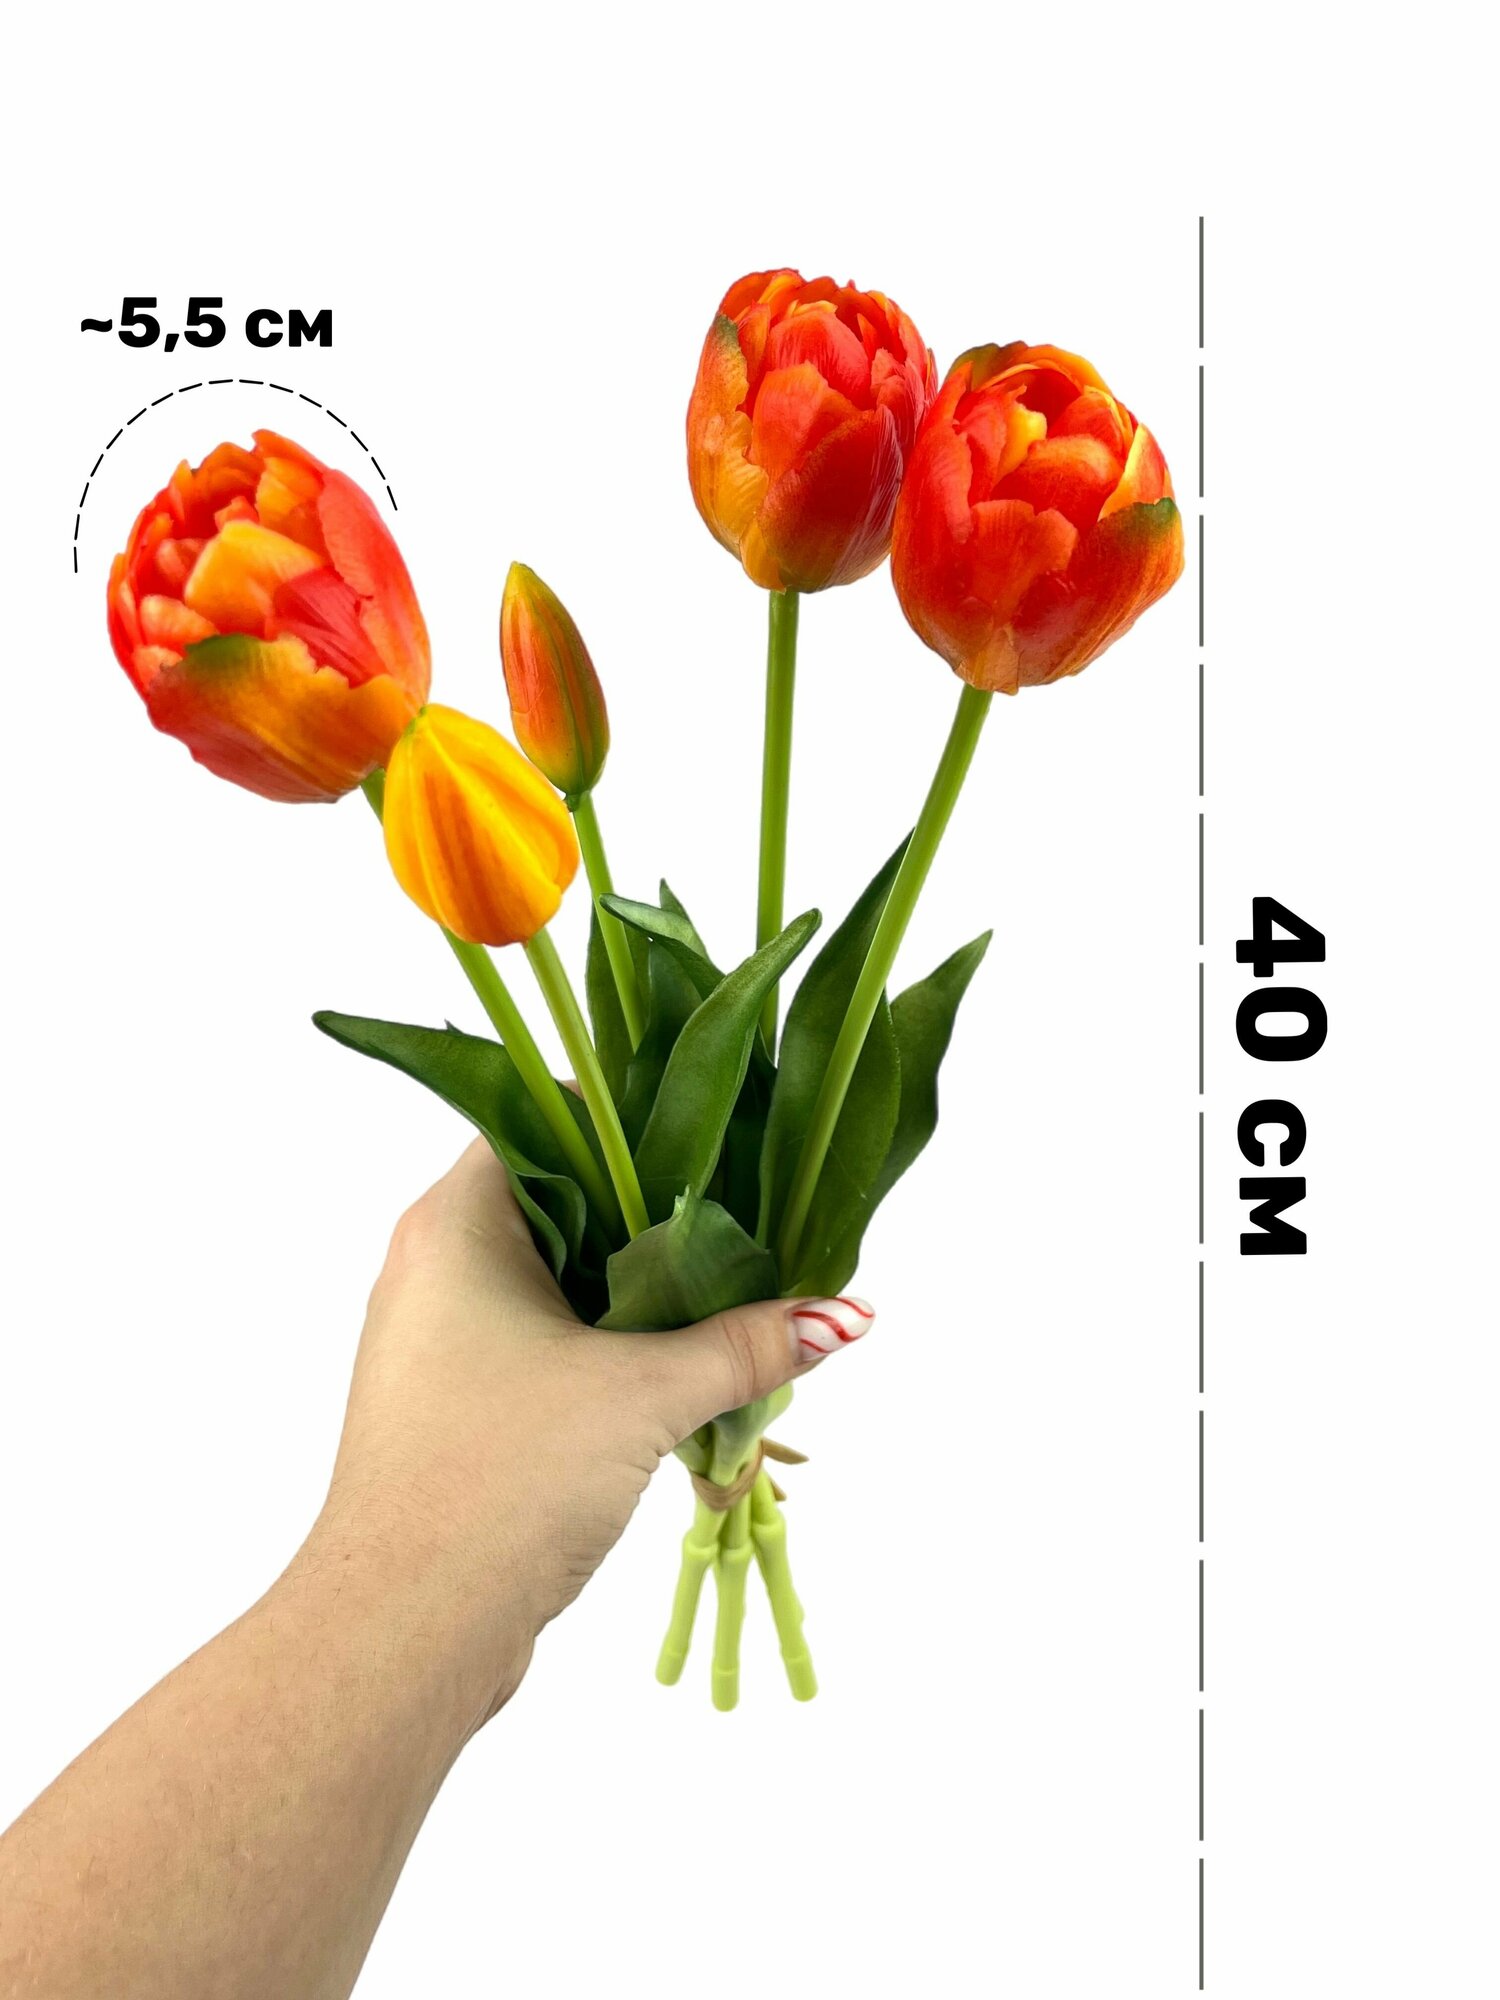 Тюльпаны пионовидные силиконовые (5 шт) - 40 см